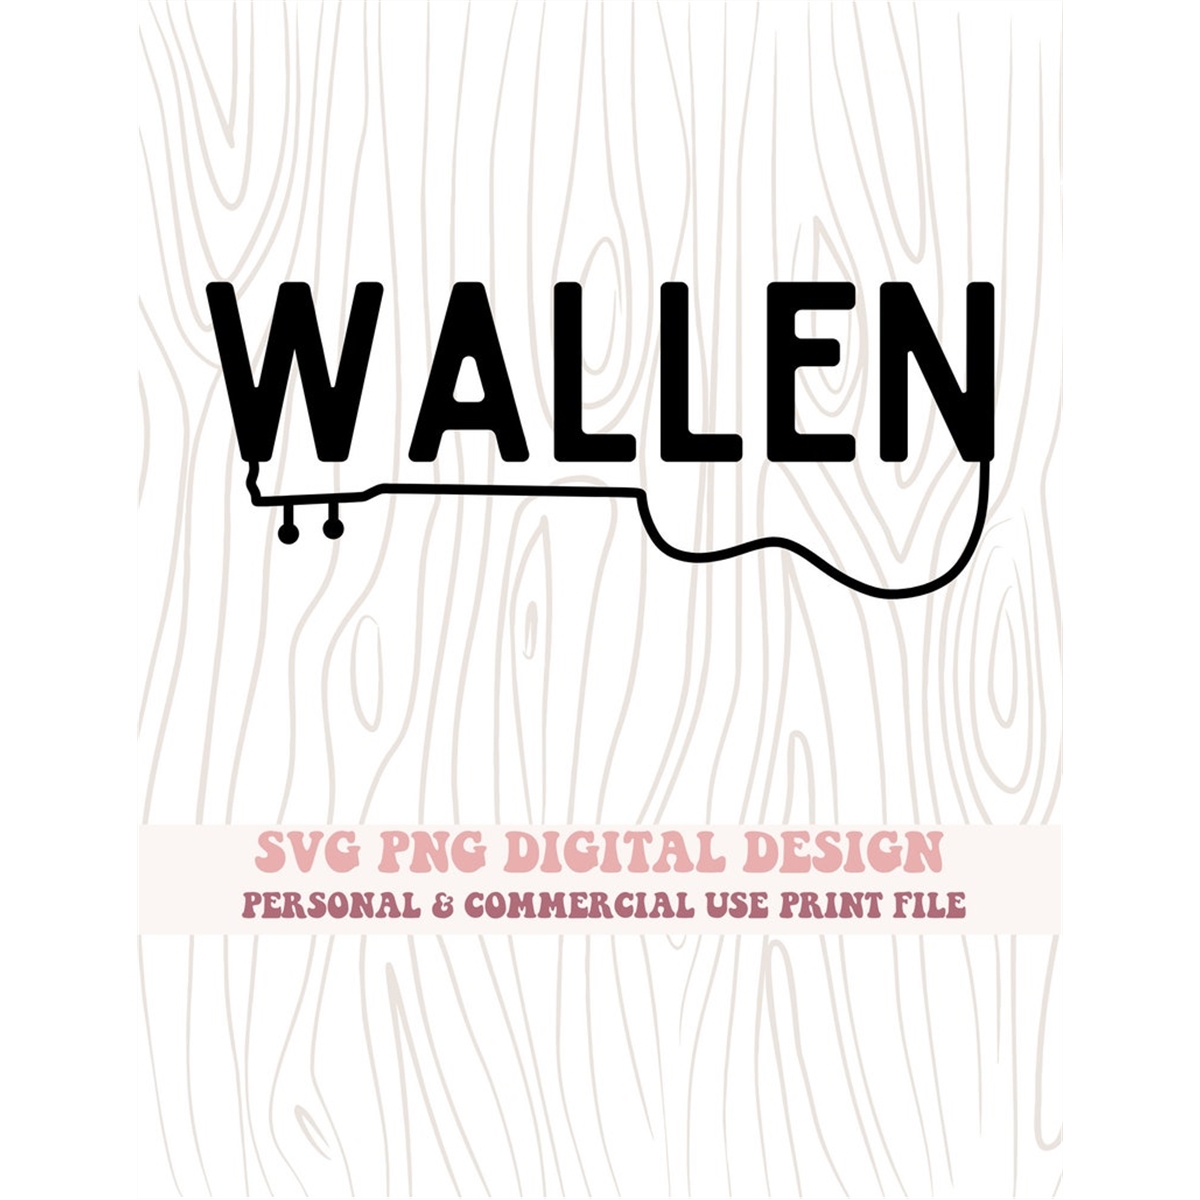 wallen-guitar-concert-western-country-svg-png-digital-design-image-1